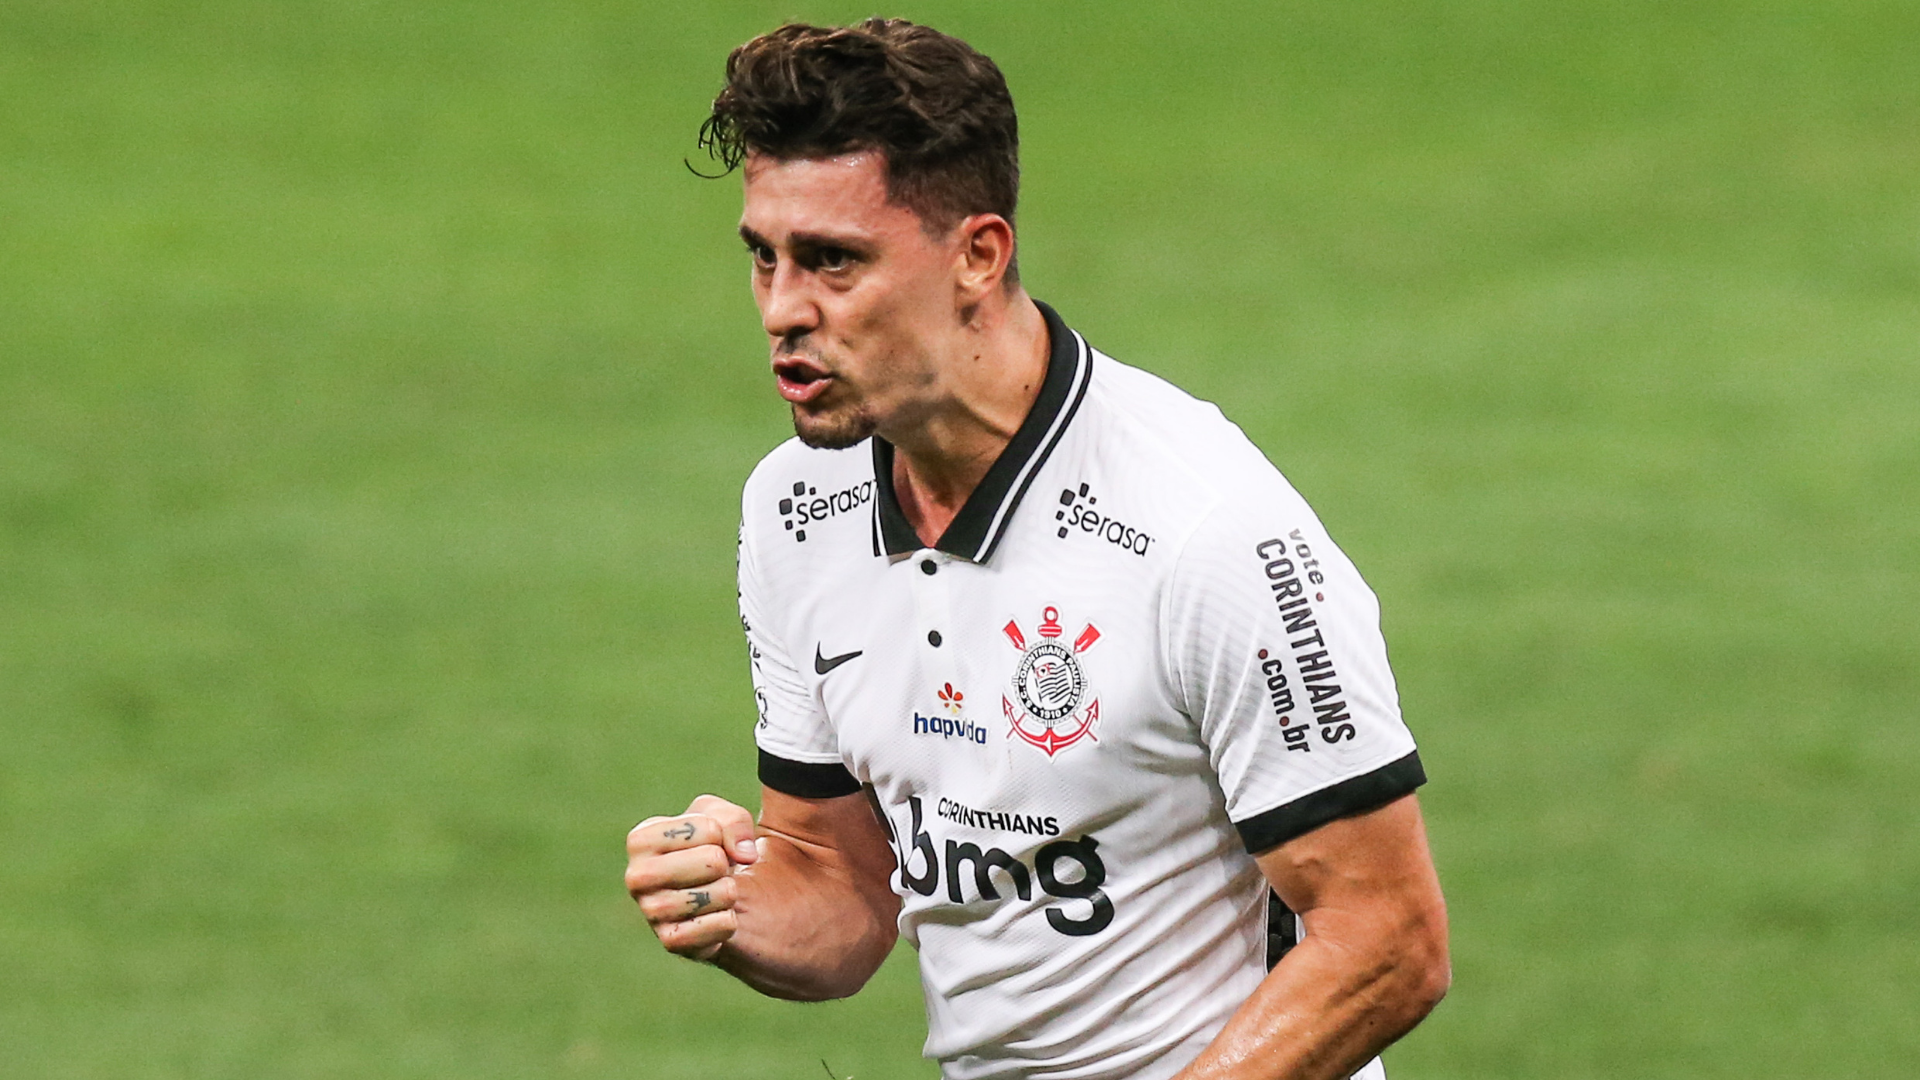 Danilo Avelar atuando pelo Corinthians